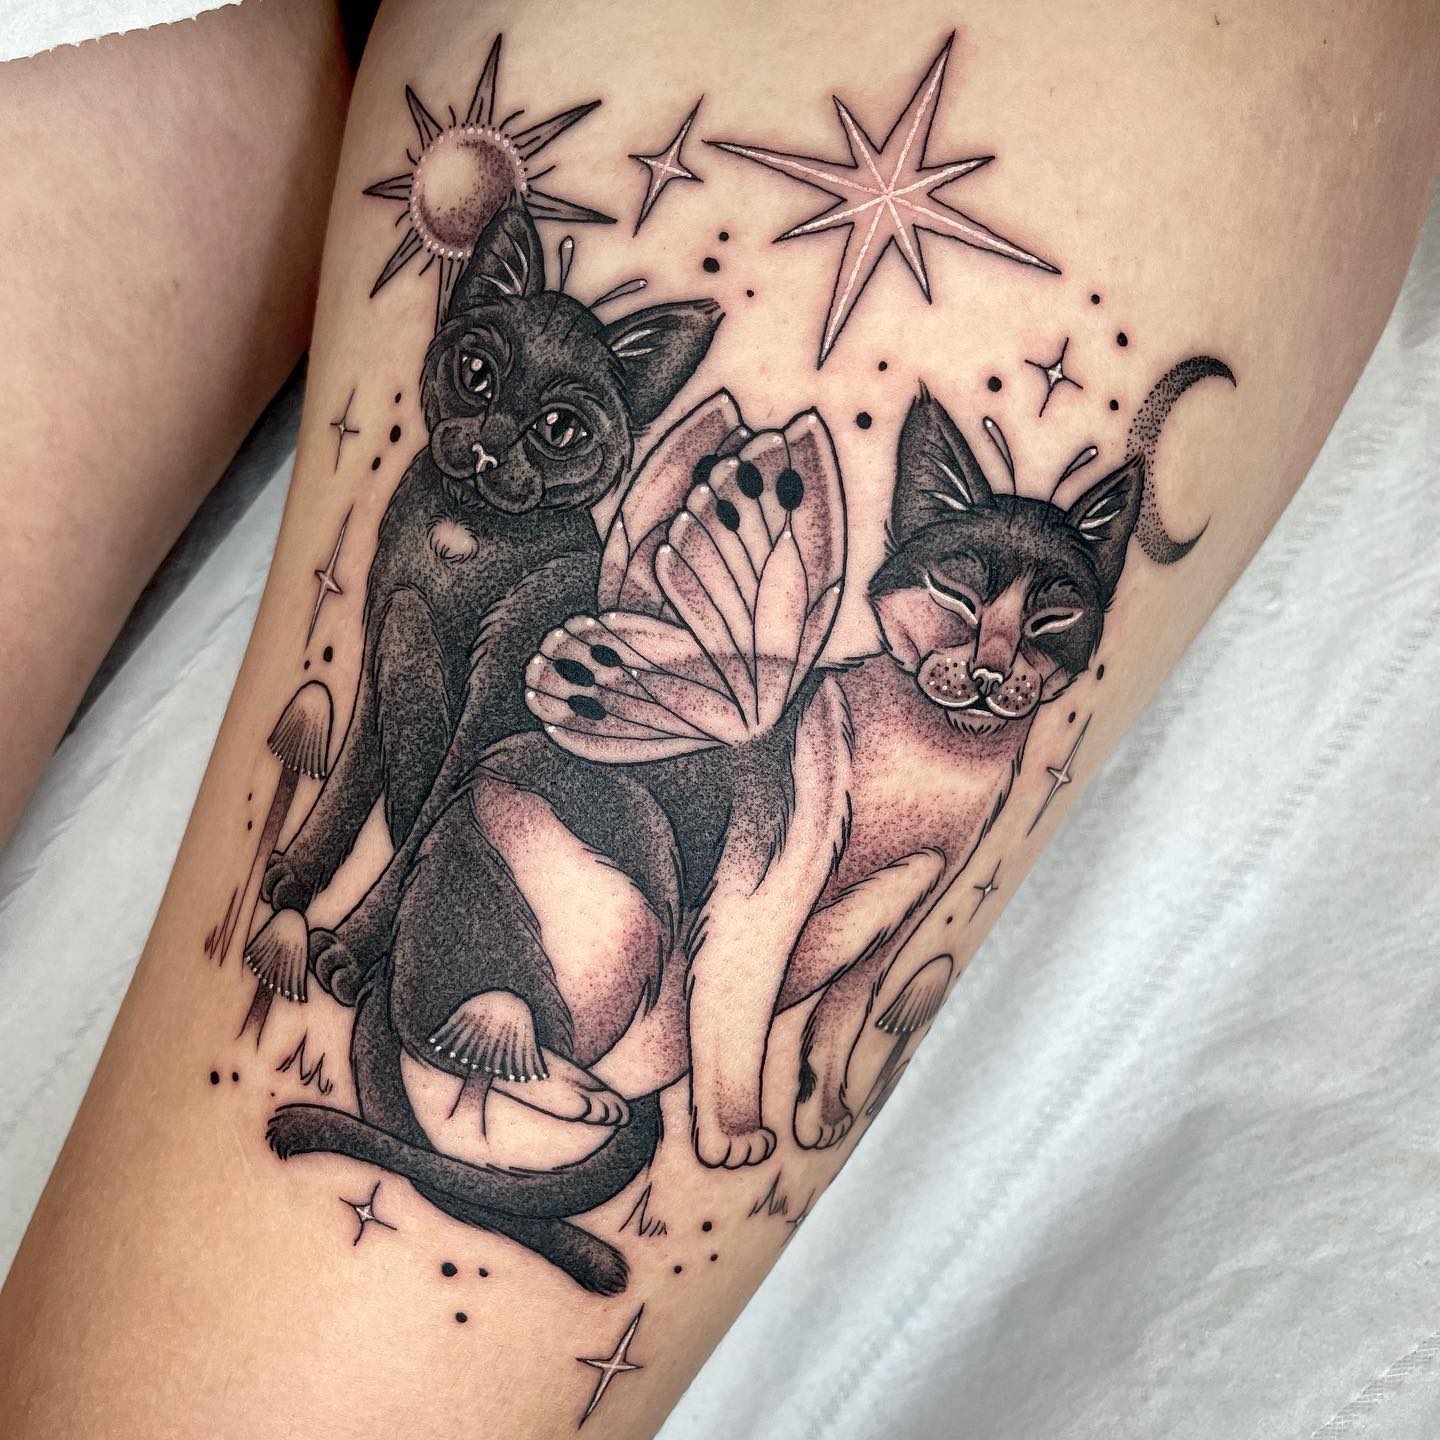 Diseño de tatuaje de dos gatos brujos.